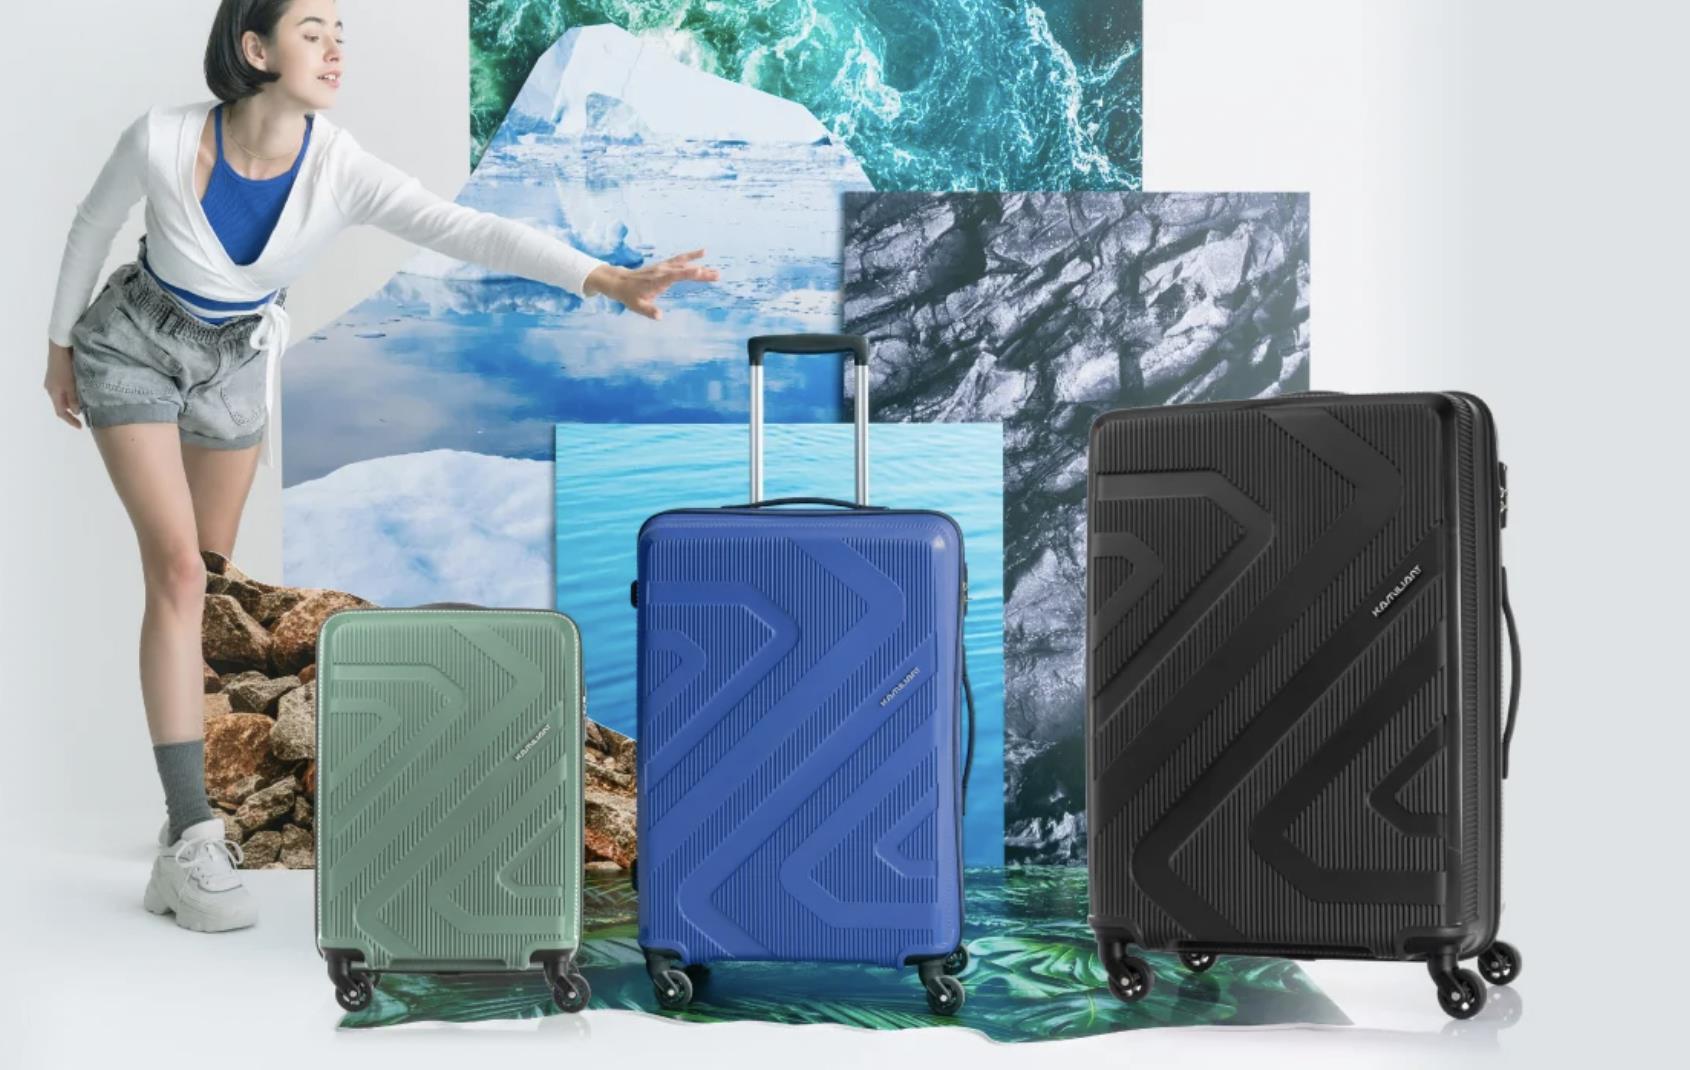 Bỏ túi ngay những bí quyết giúp chuyến du lịch hè của bạn luôn vui - Ảnh 3.